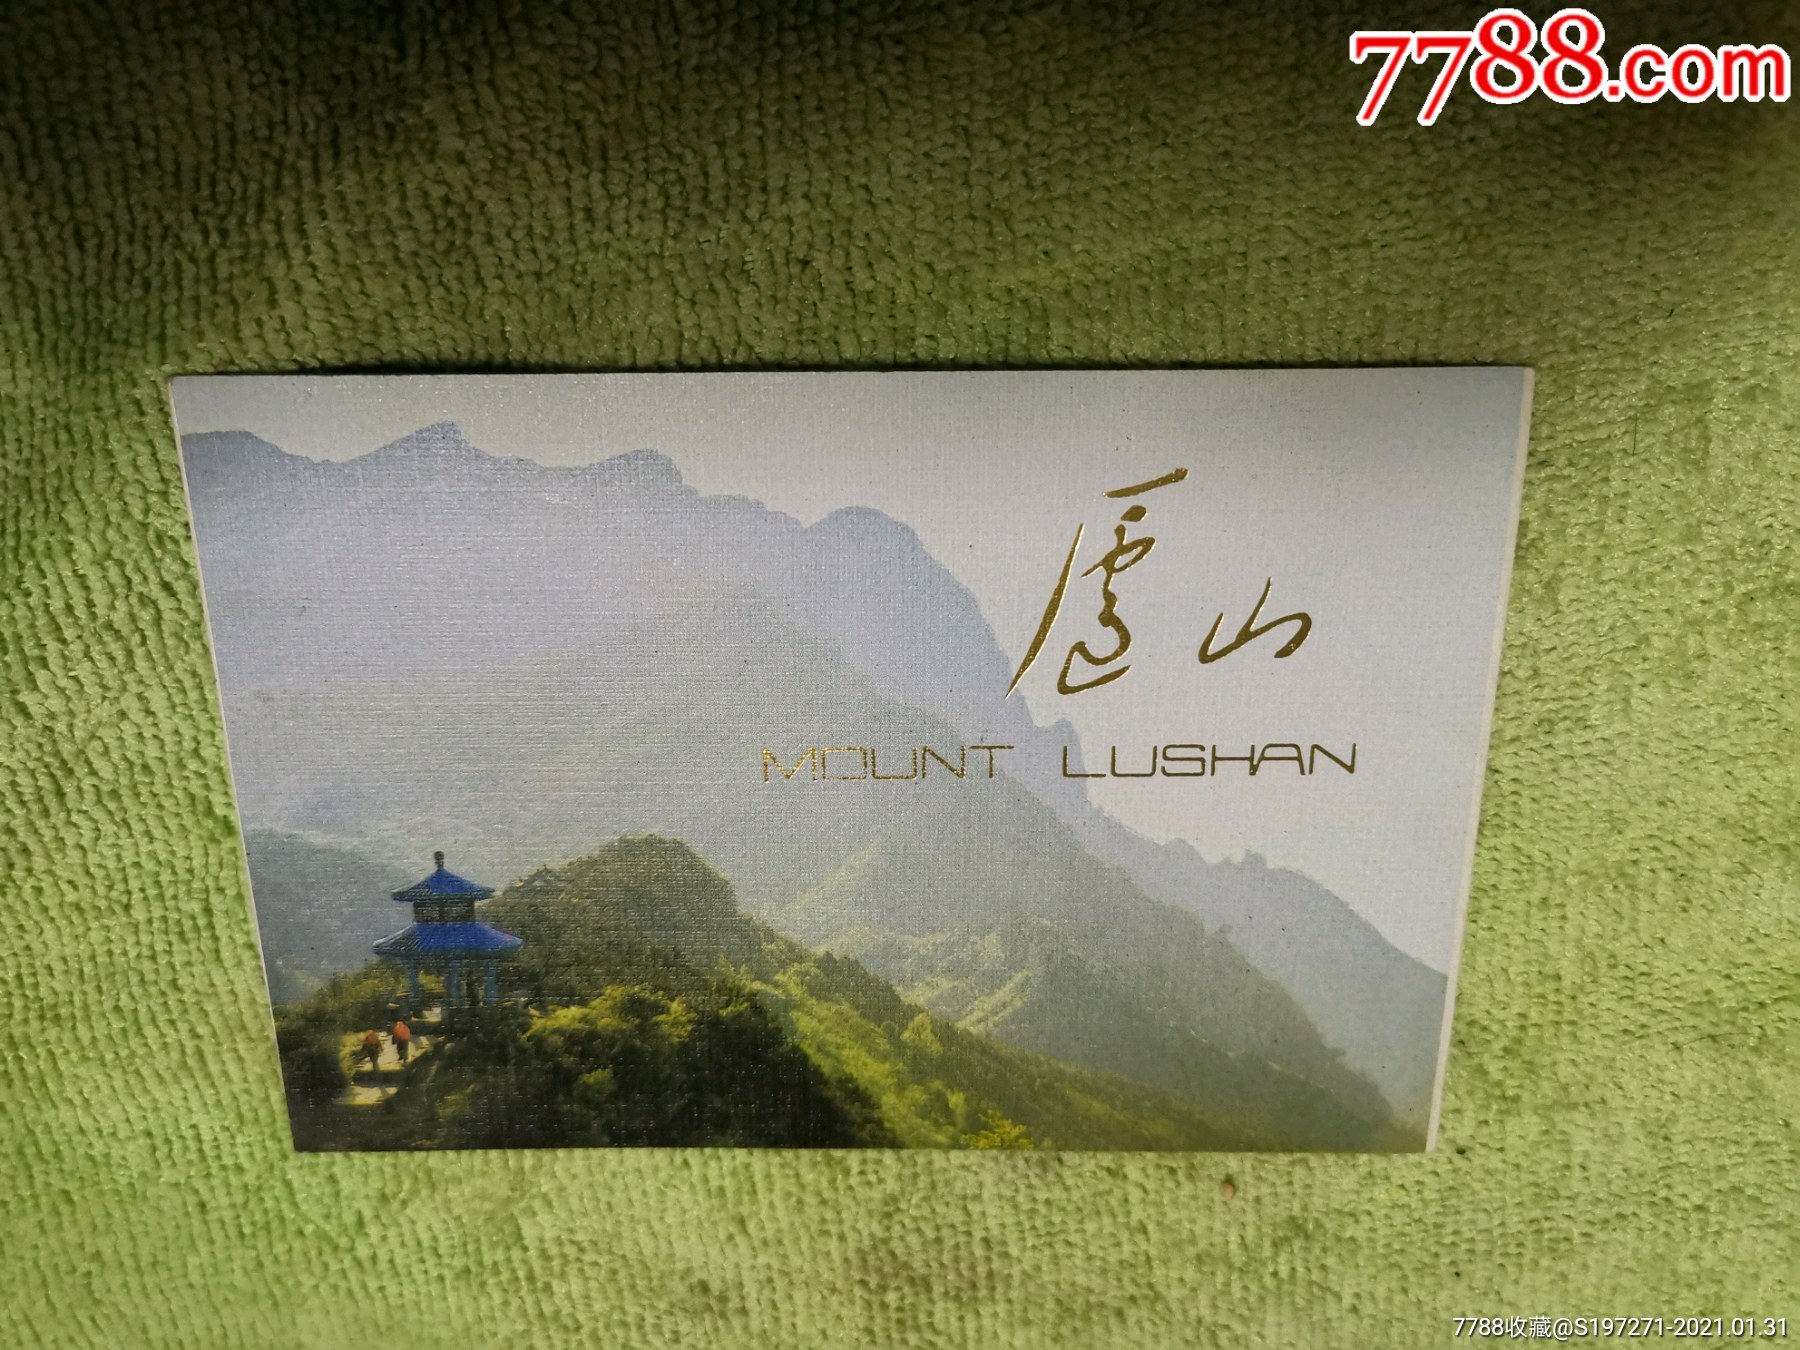 江西庐山旅游景点门票图片